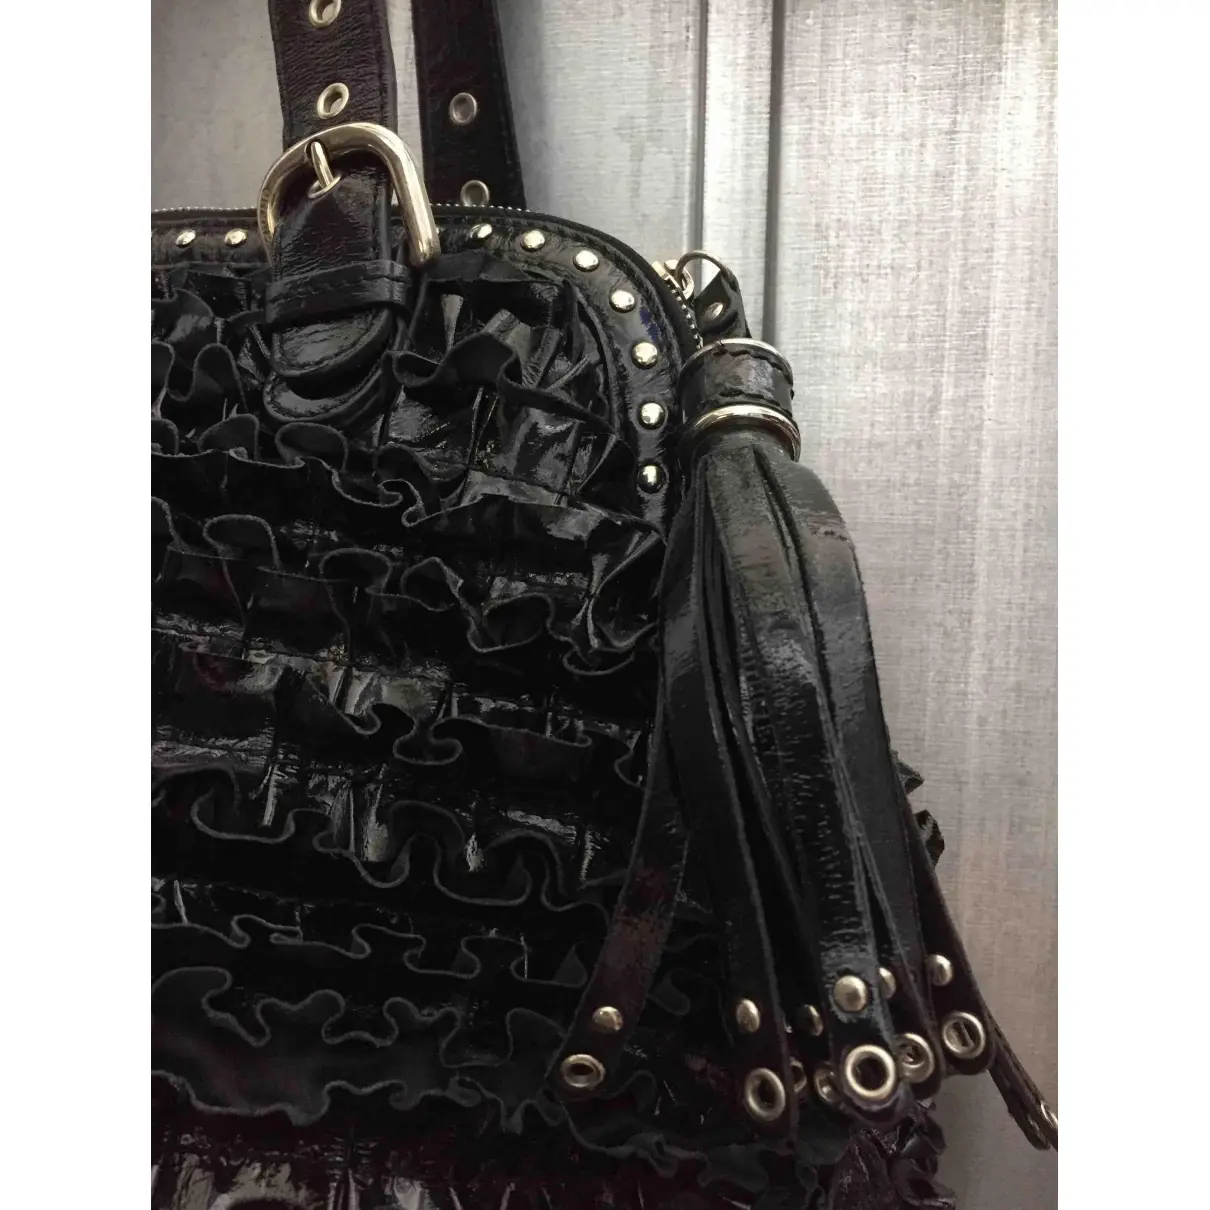 Luxury Moschino Cheap And Chic Handbags Women